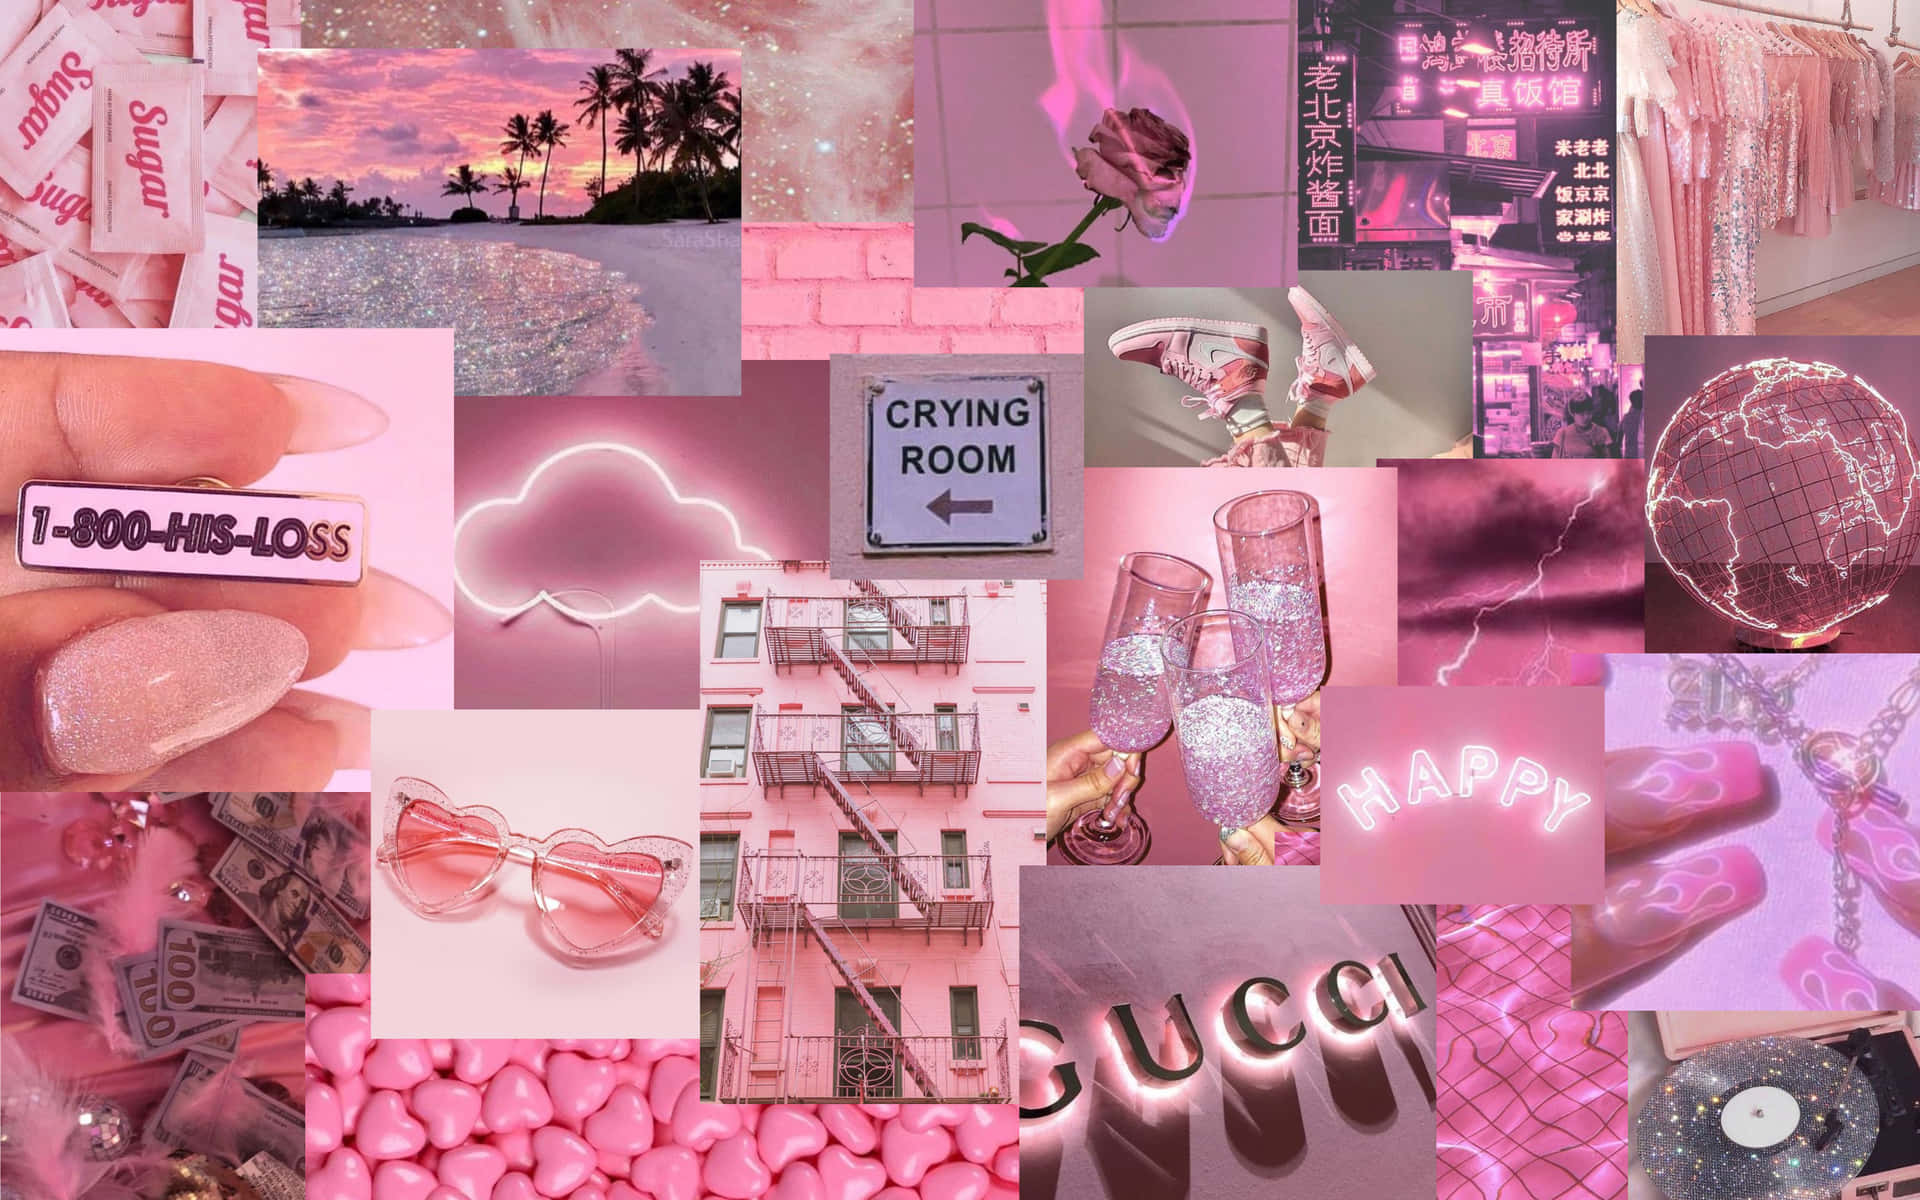 Pinkescollage Mit Vielen Bildern Von Pinken Gegenständen Wallpaper